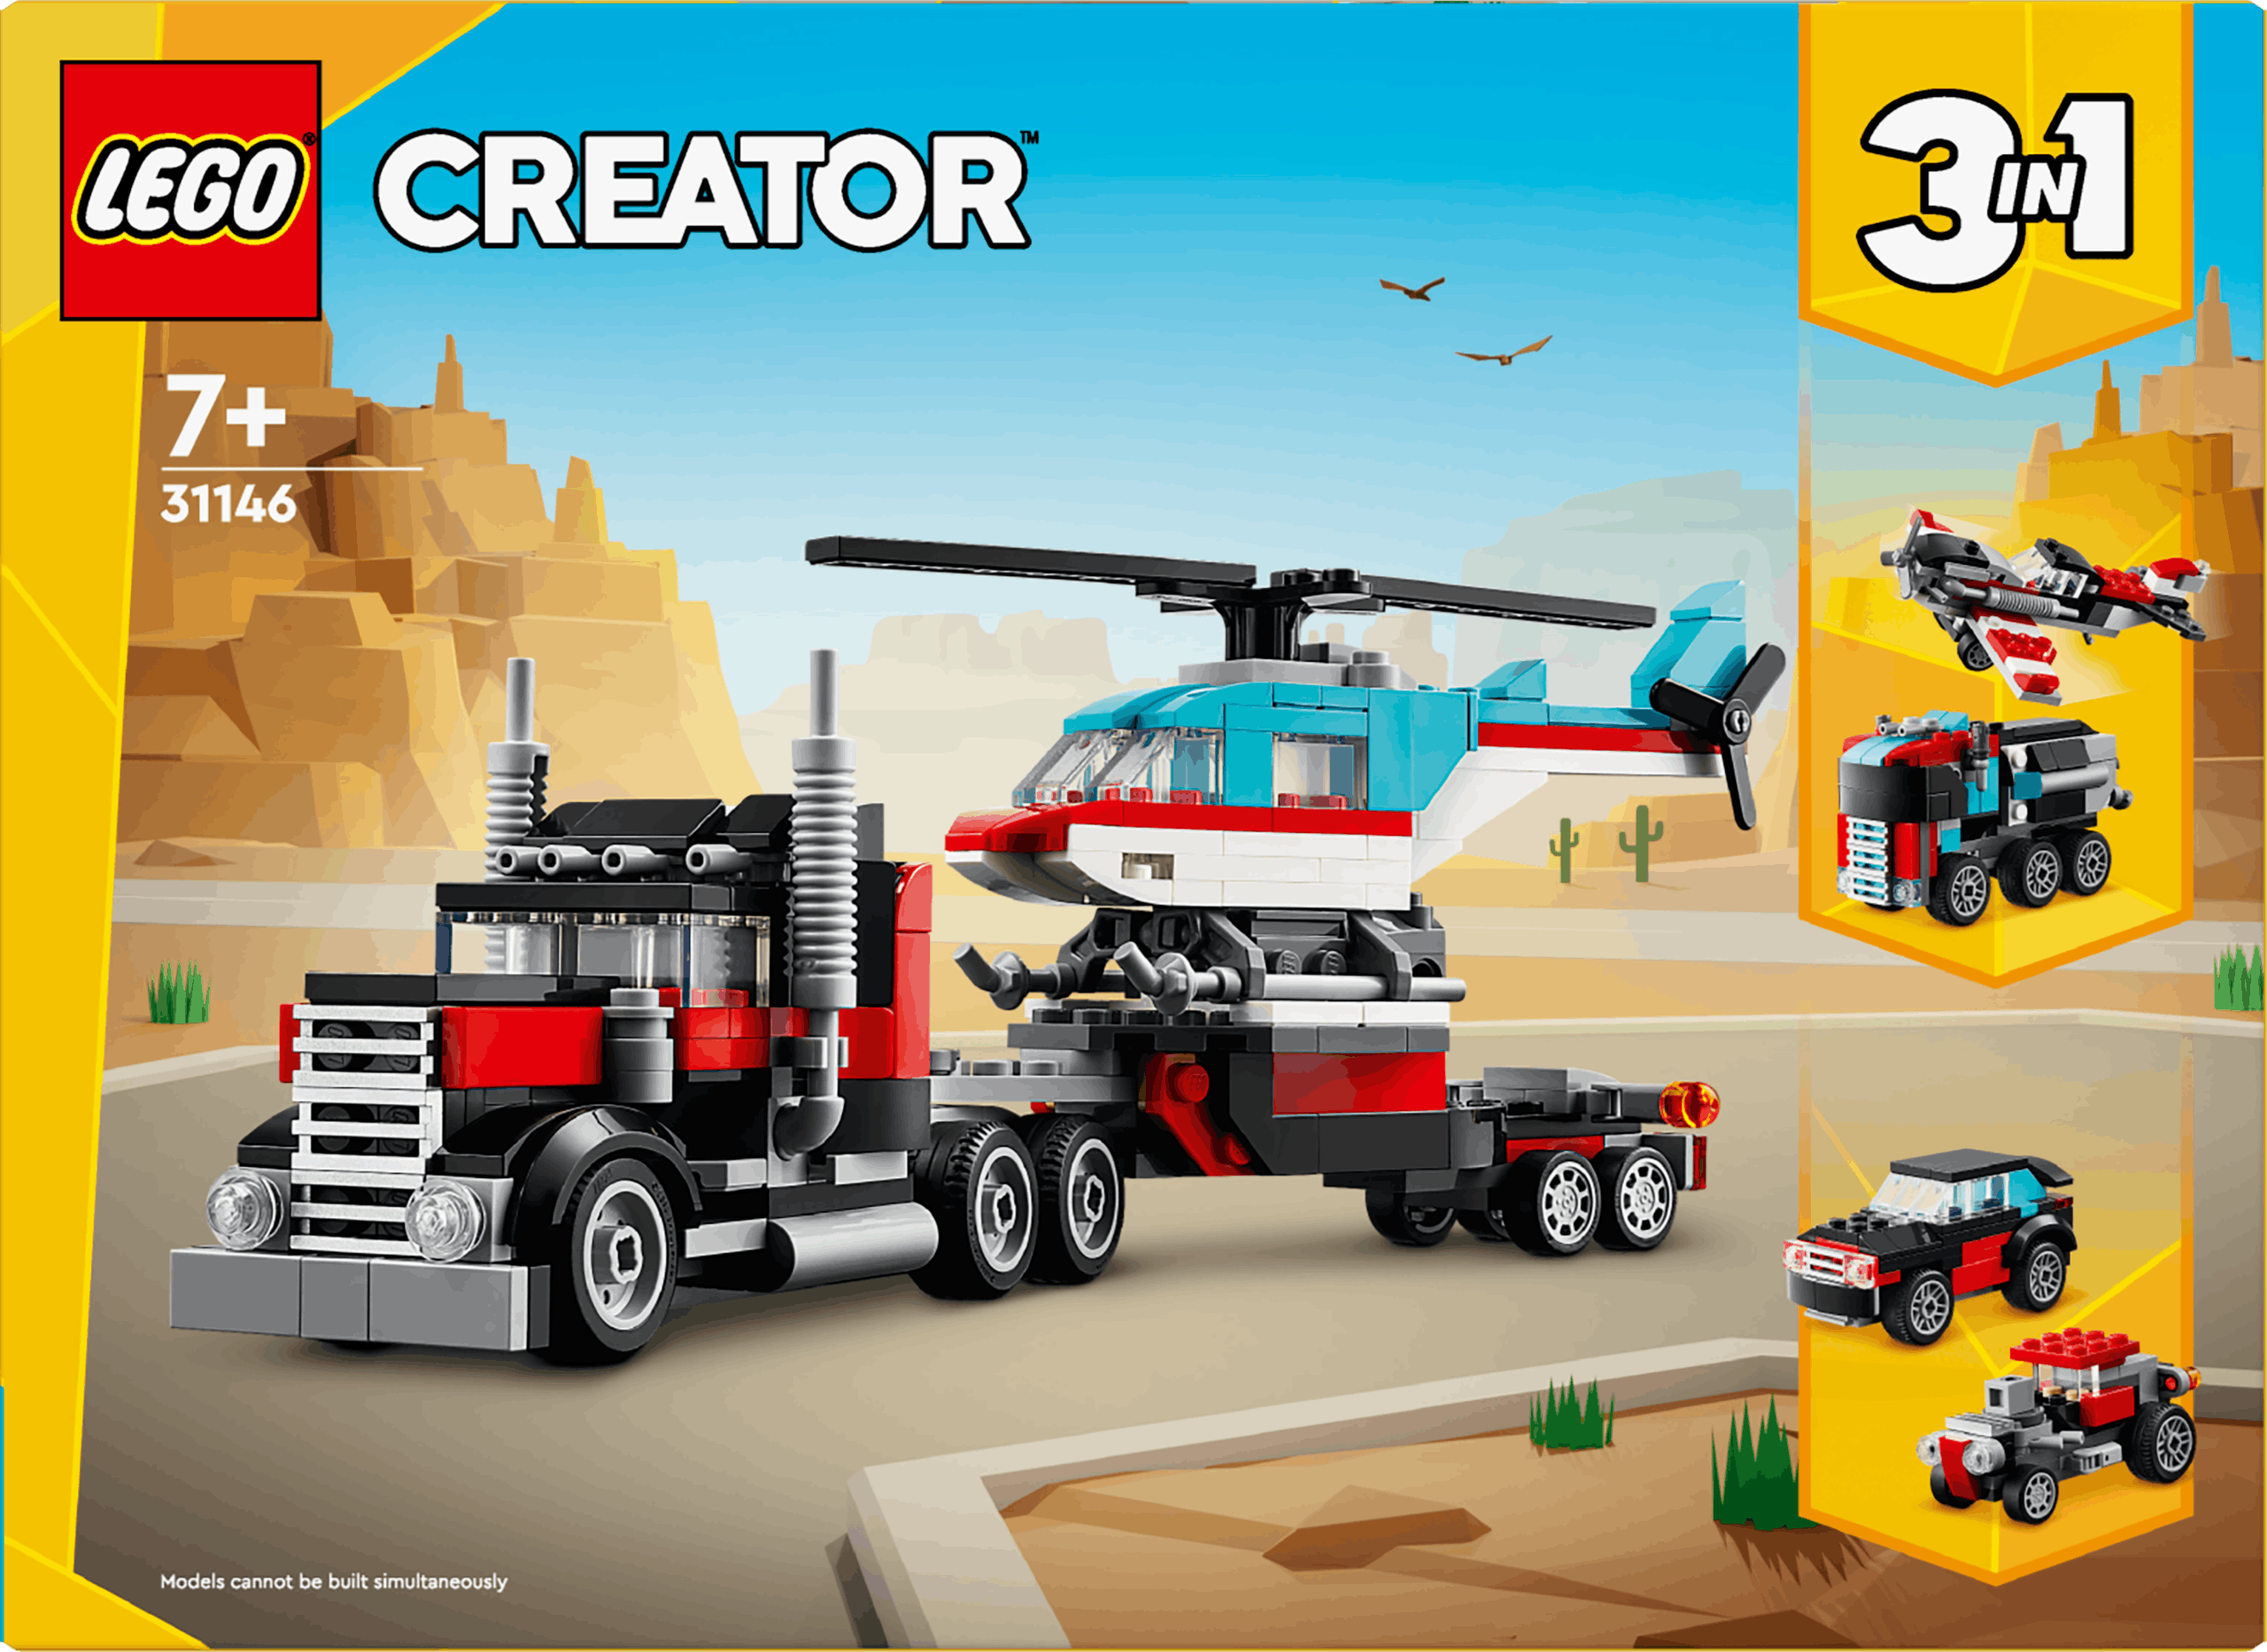 Lego Creator Le Camion Remorque Avec Hélicoptère (31146)